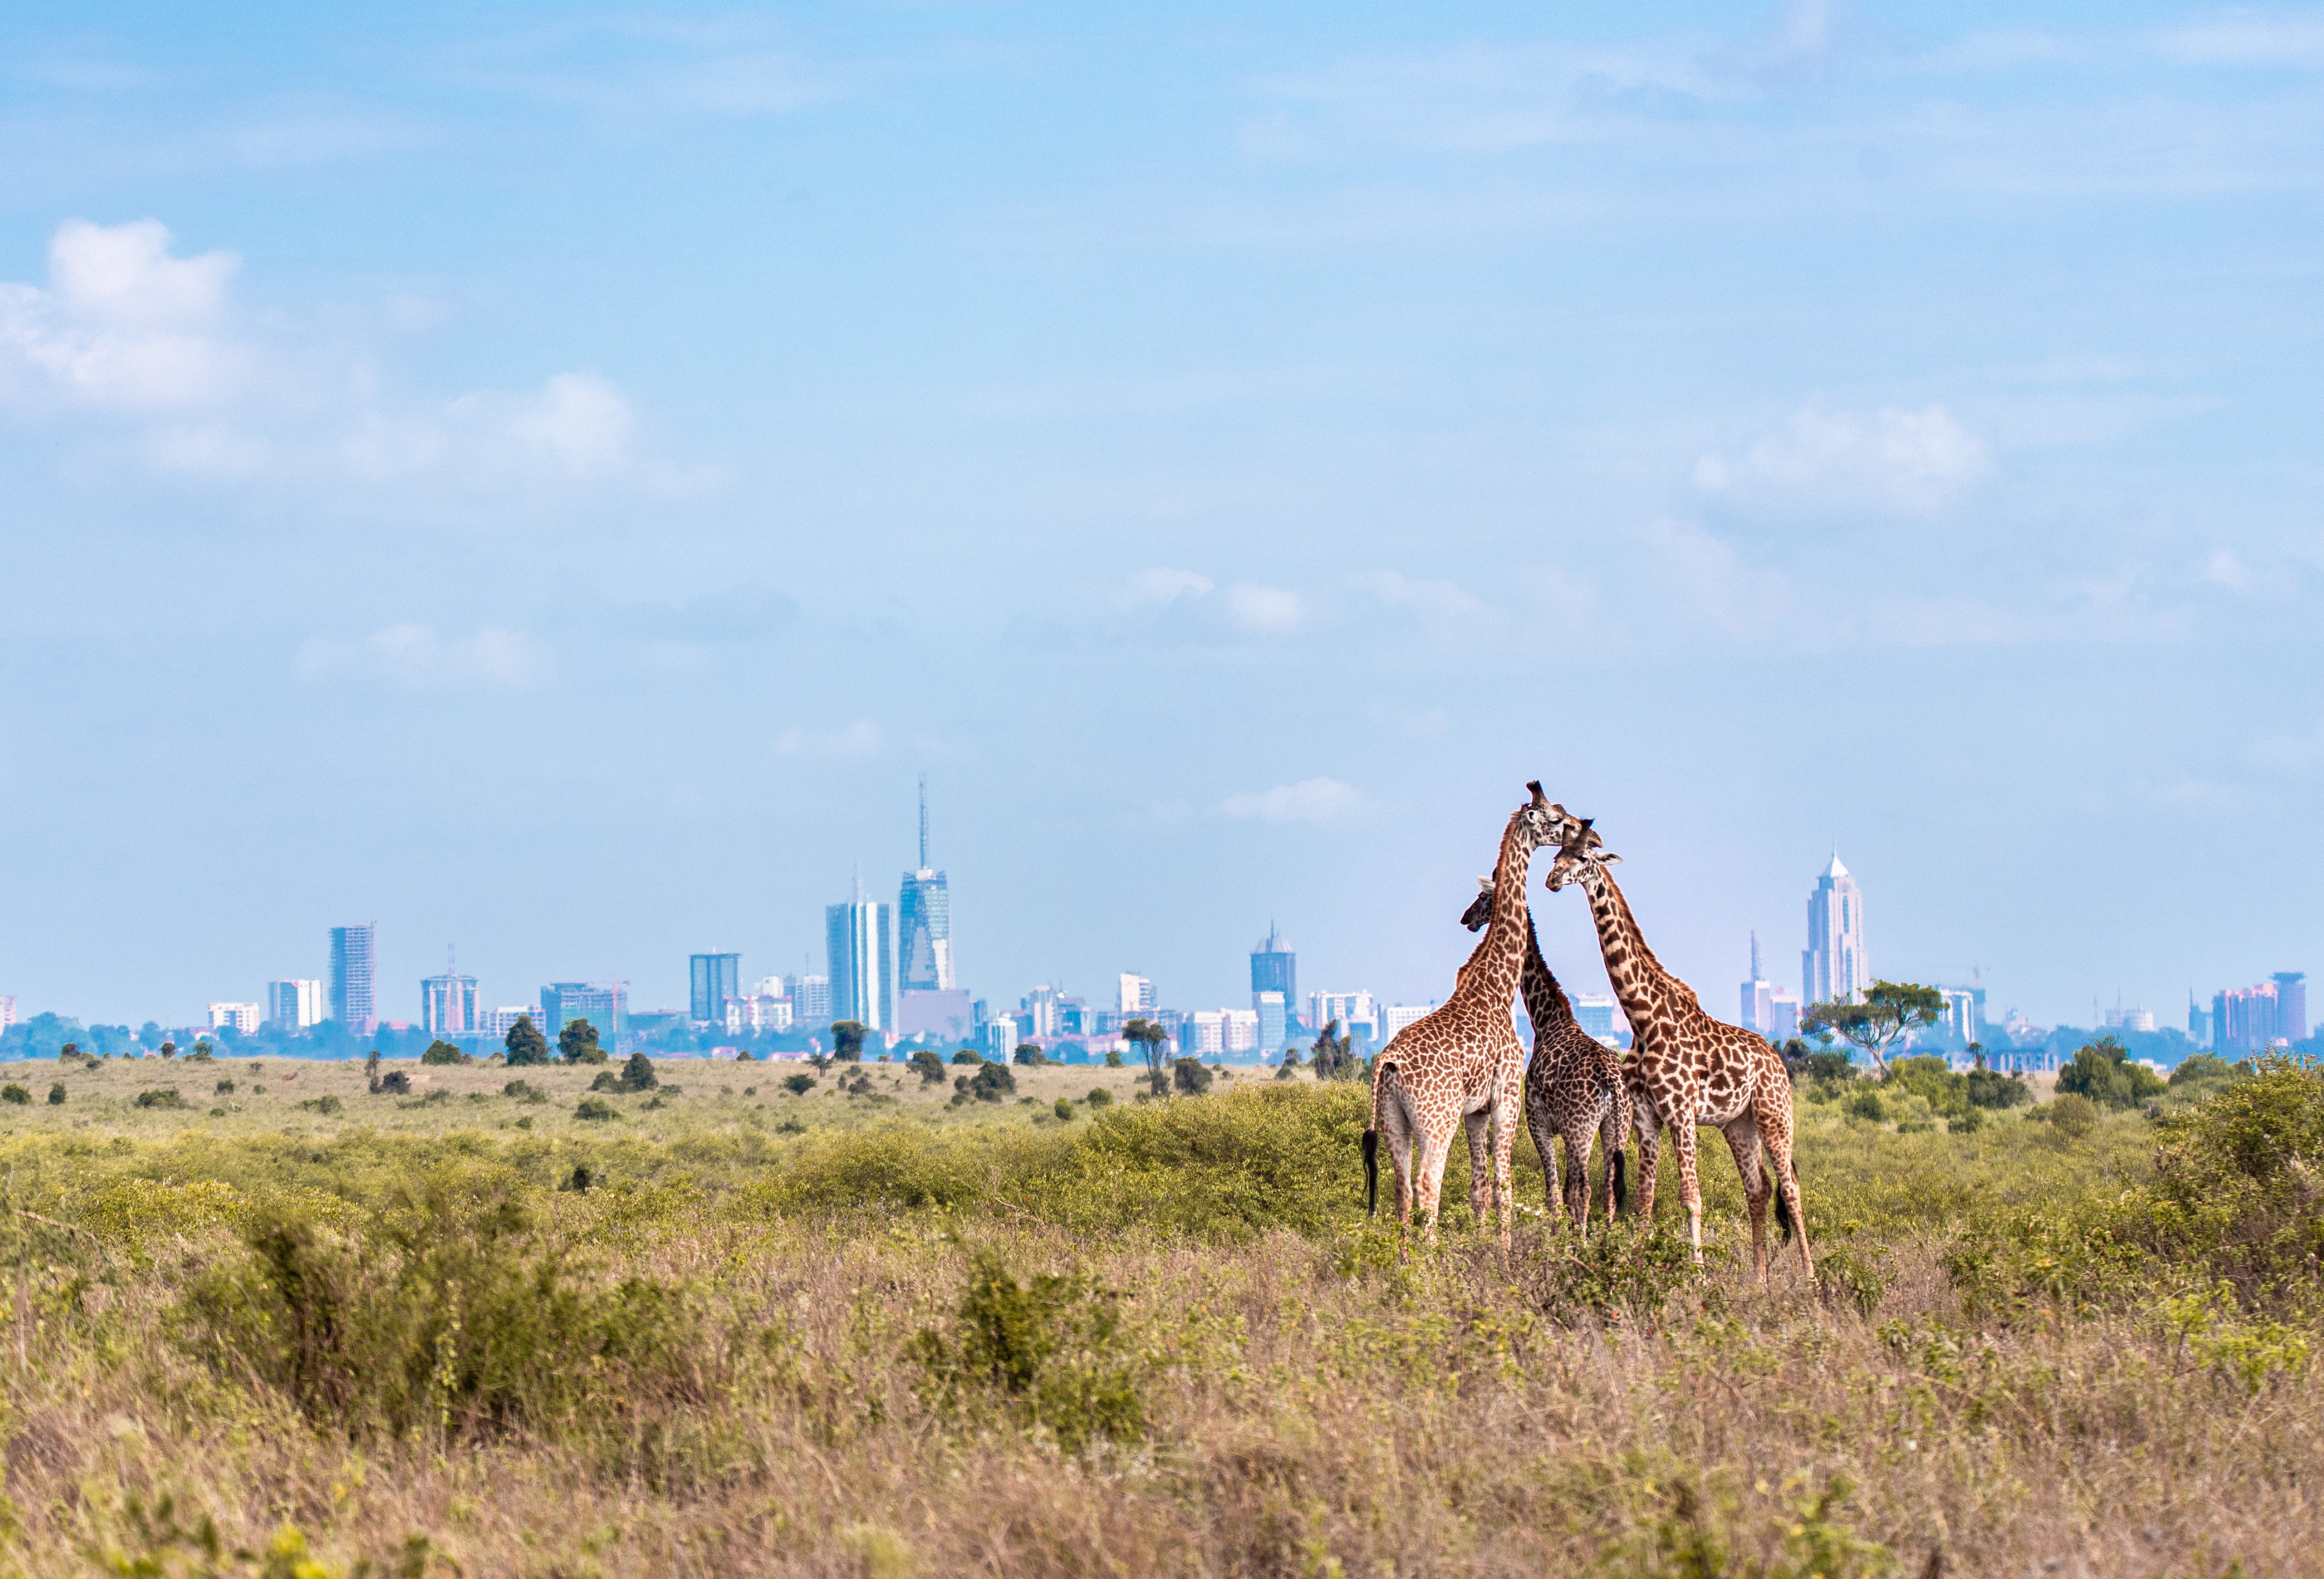 image of Kenya buildings with giraffes